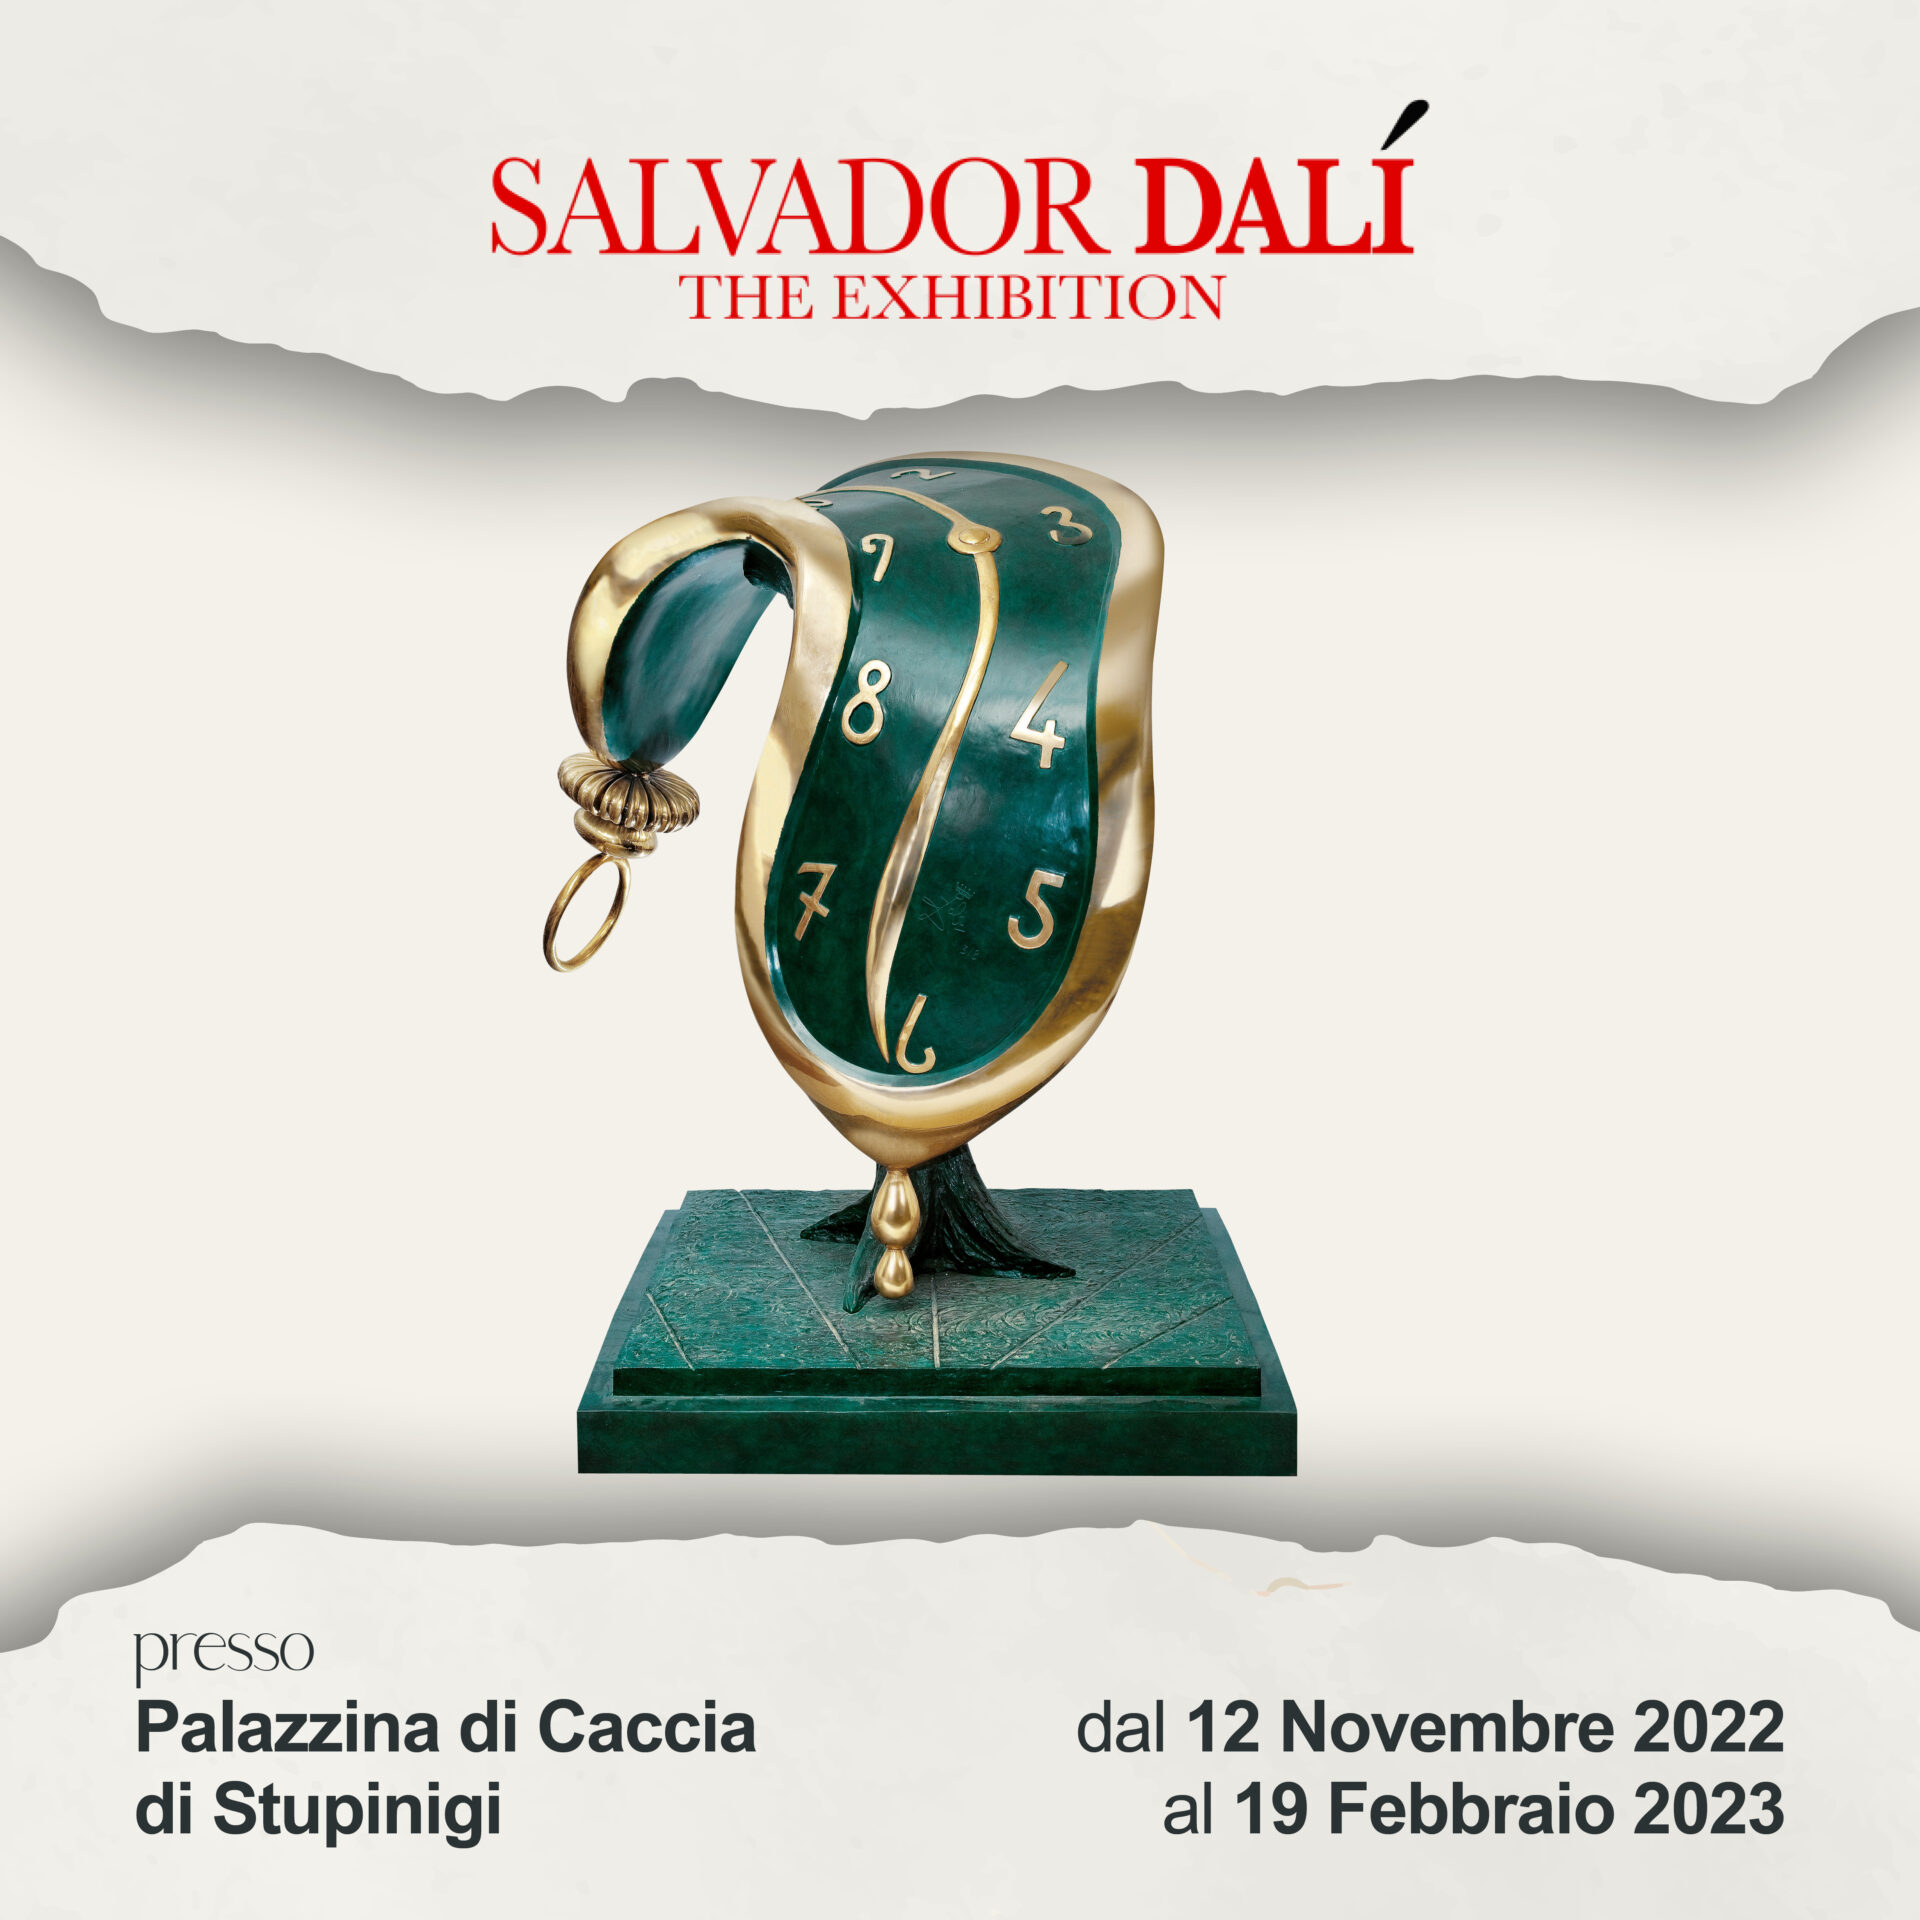 Salvador DALÍ The Exhibition